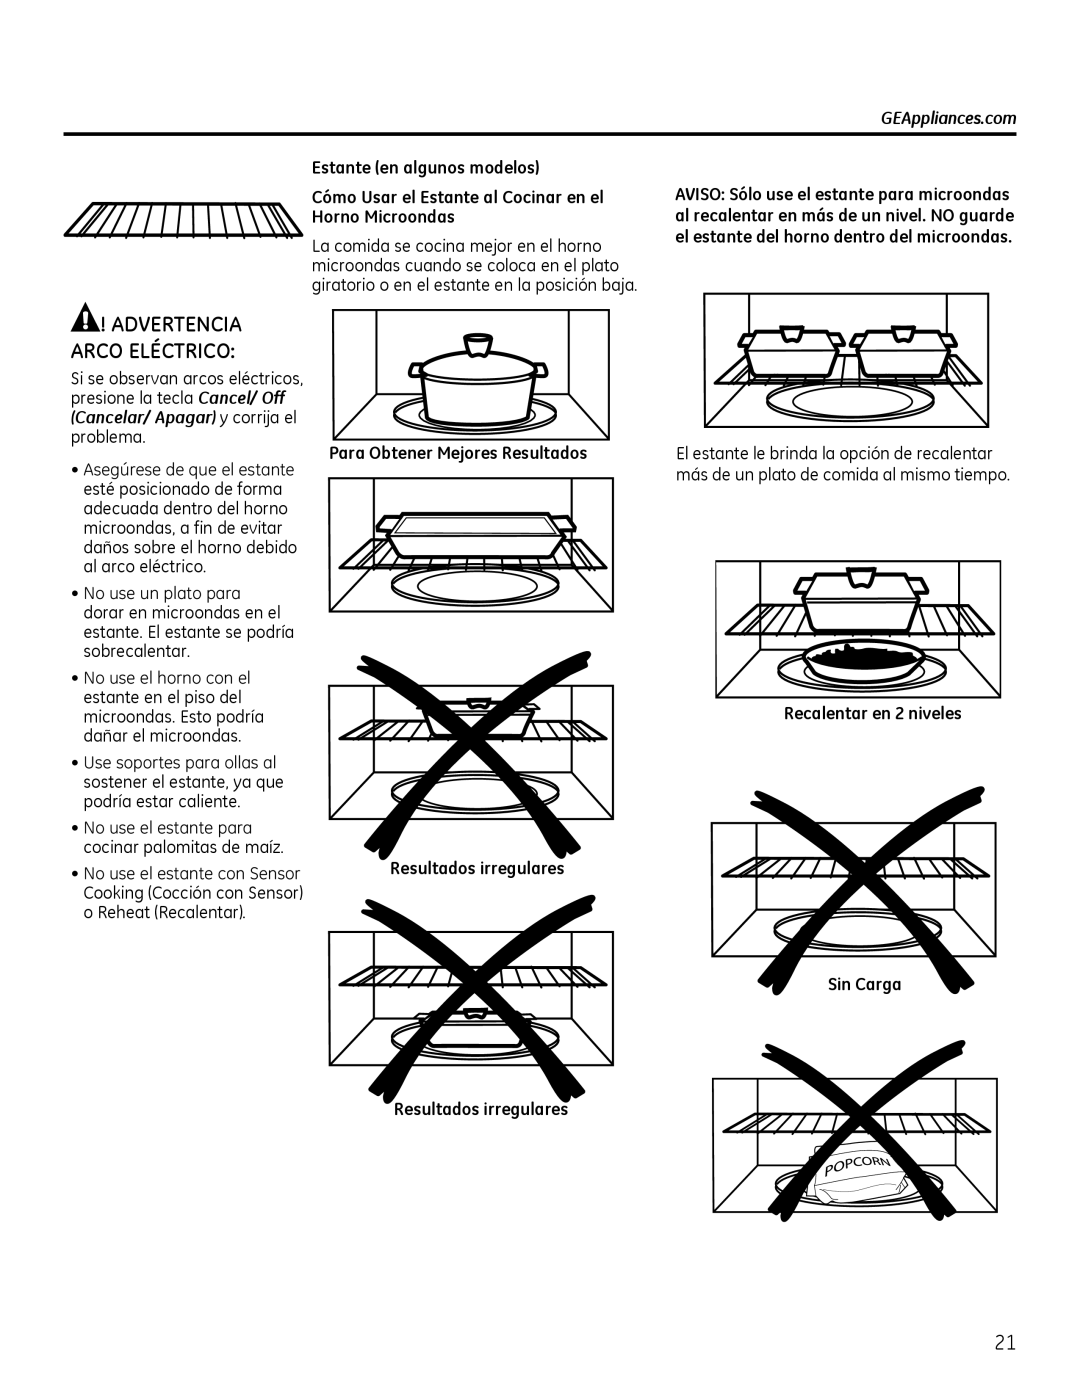 GE Microwave Oven owner manual Advertencia Arco Eléctrico, GEAppliances.com, Estante en algunos modelos 